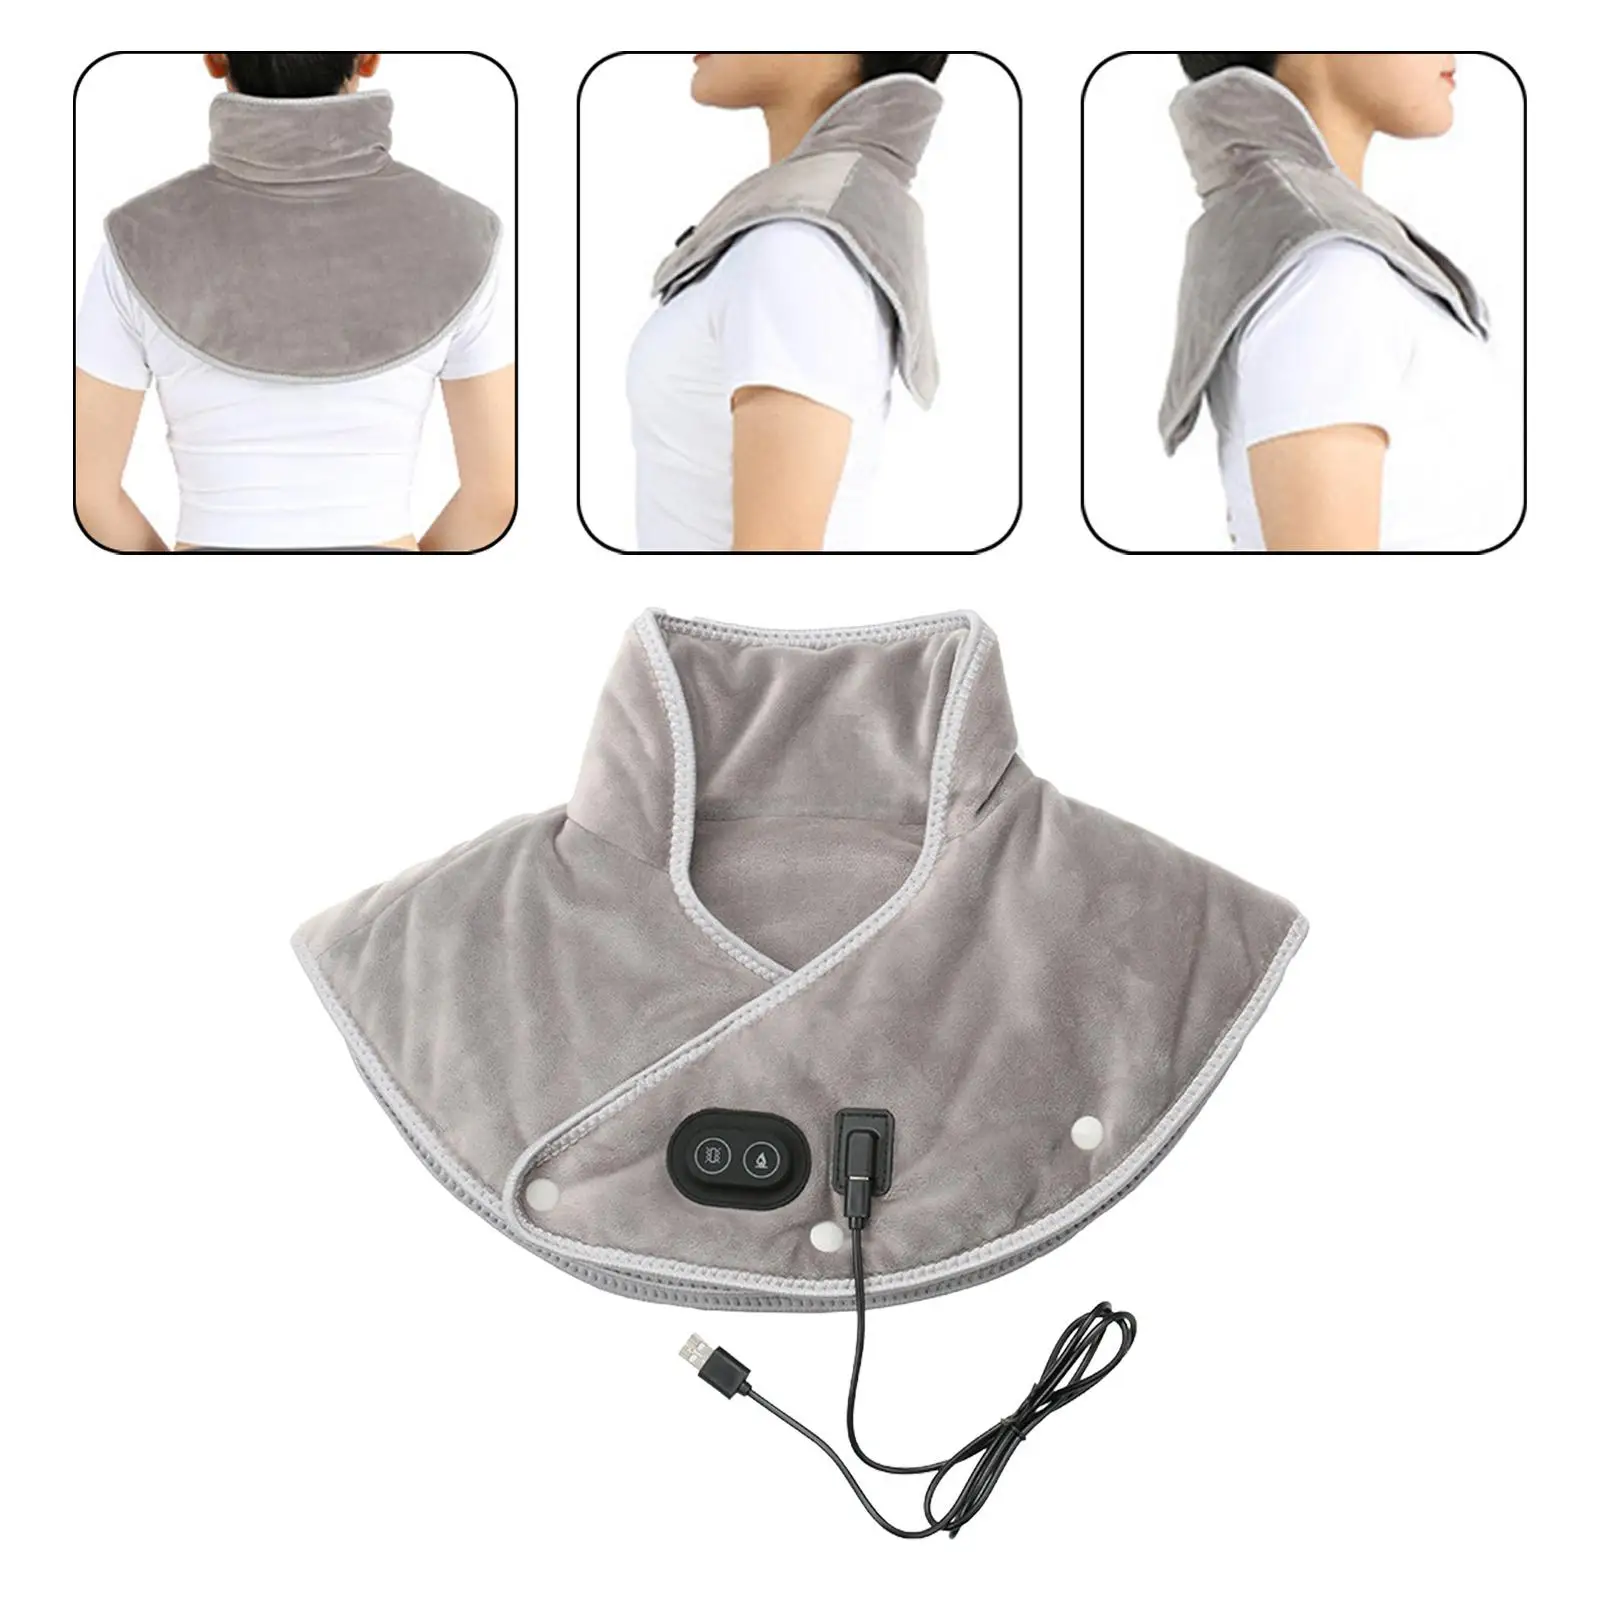 

Электрическая нагревательная плечевая Шейная Подушка, портативная с 3 настройками температуры, большая для мужчин и женщин, массажный Бандаж с USB, термокомпрессионный коврик